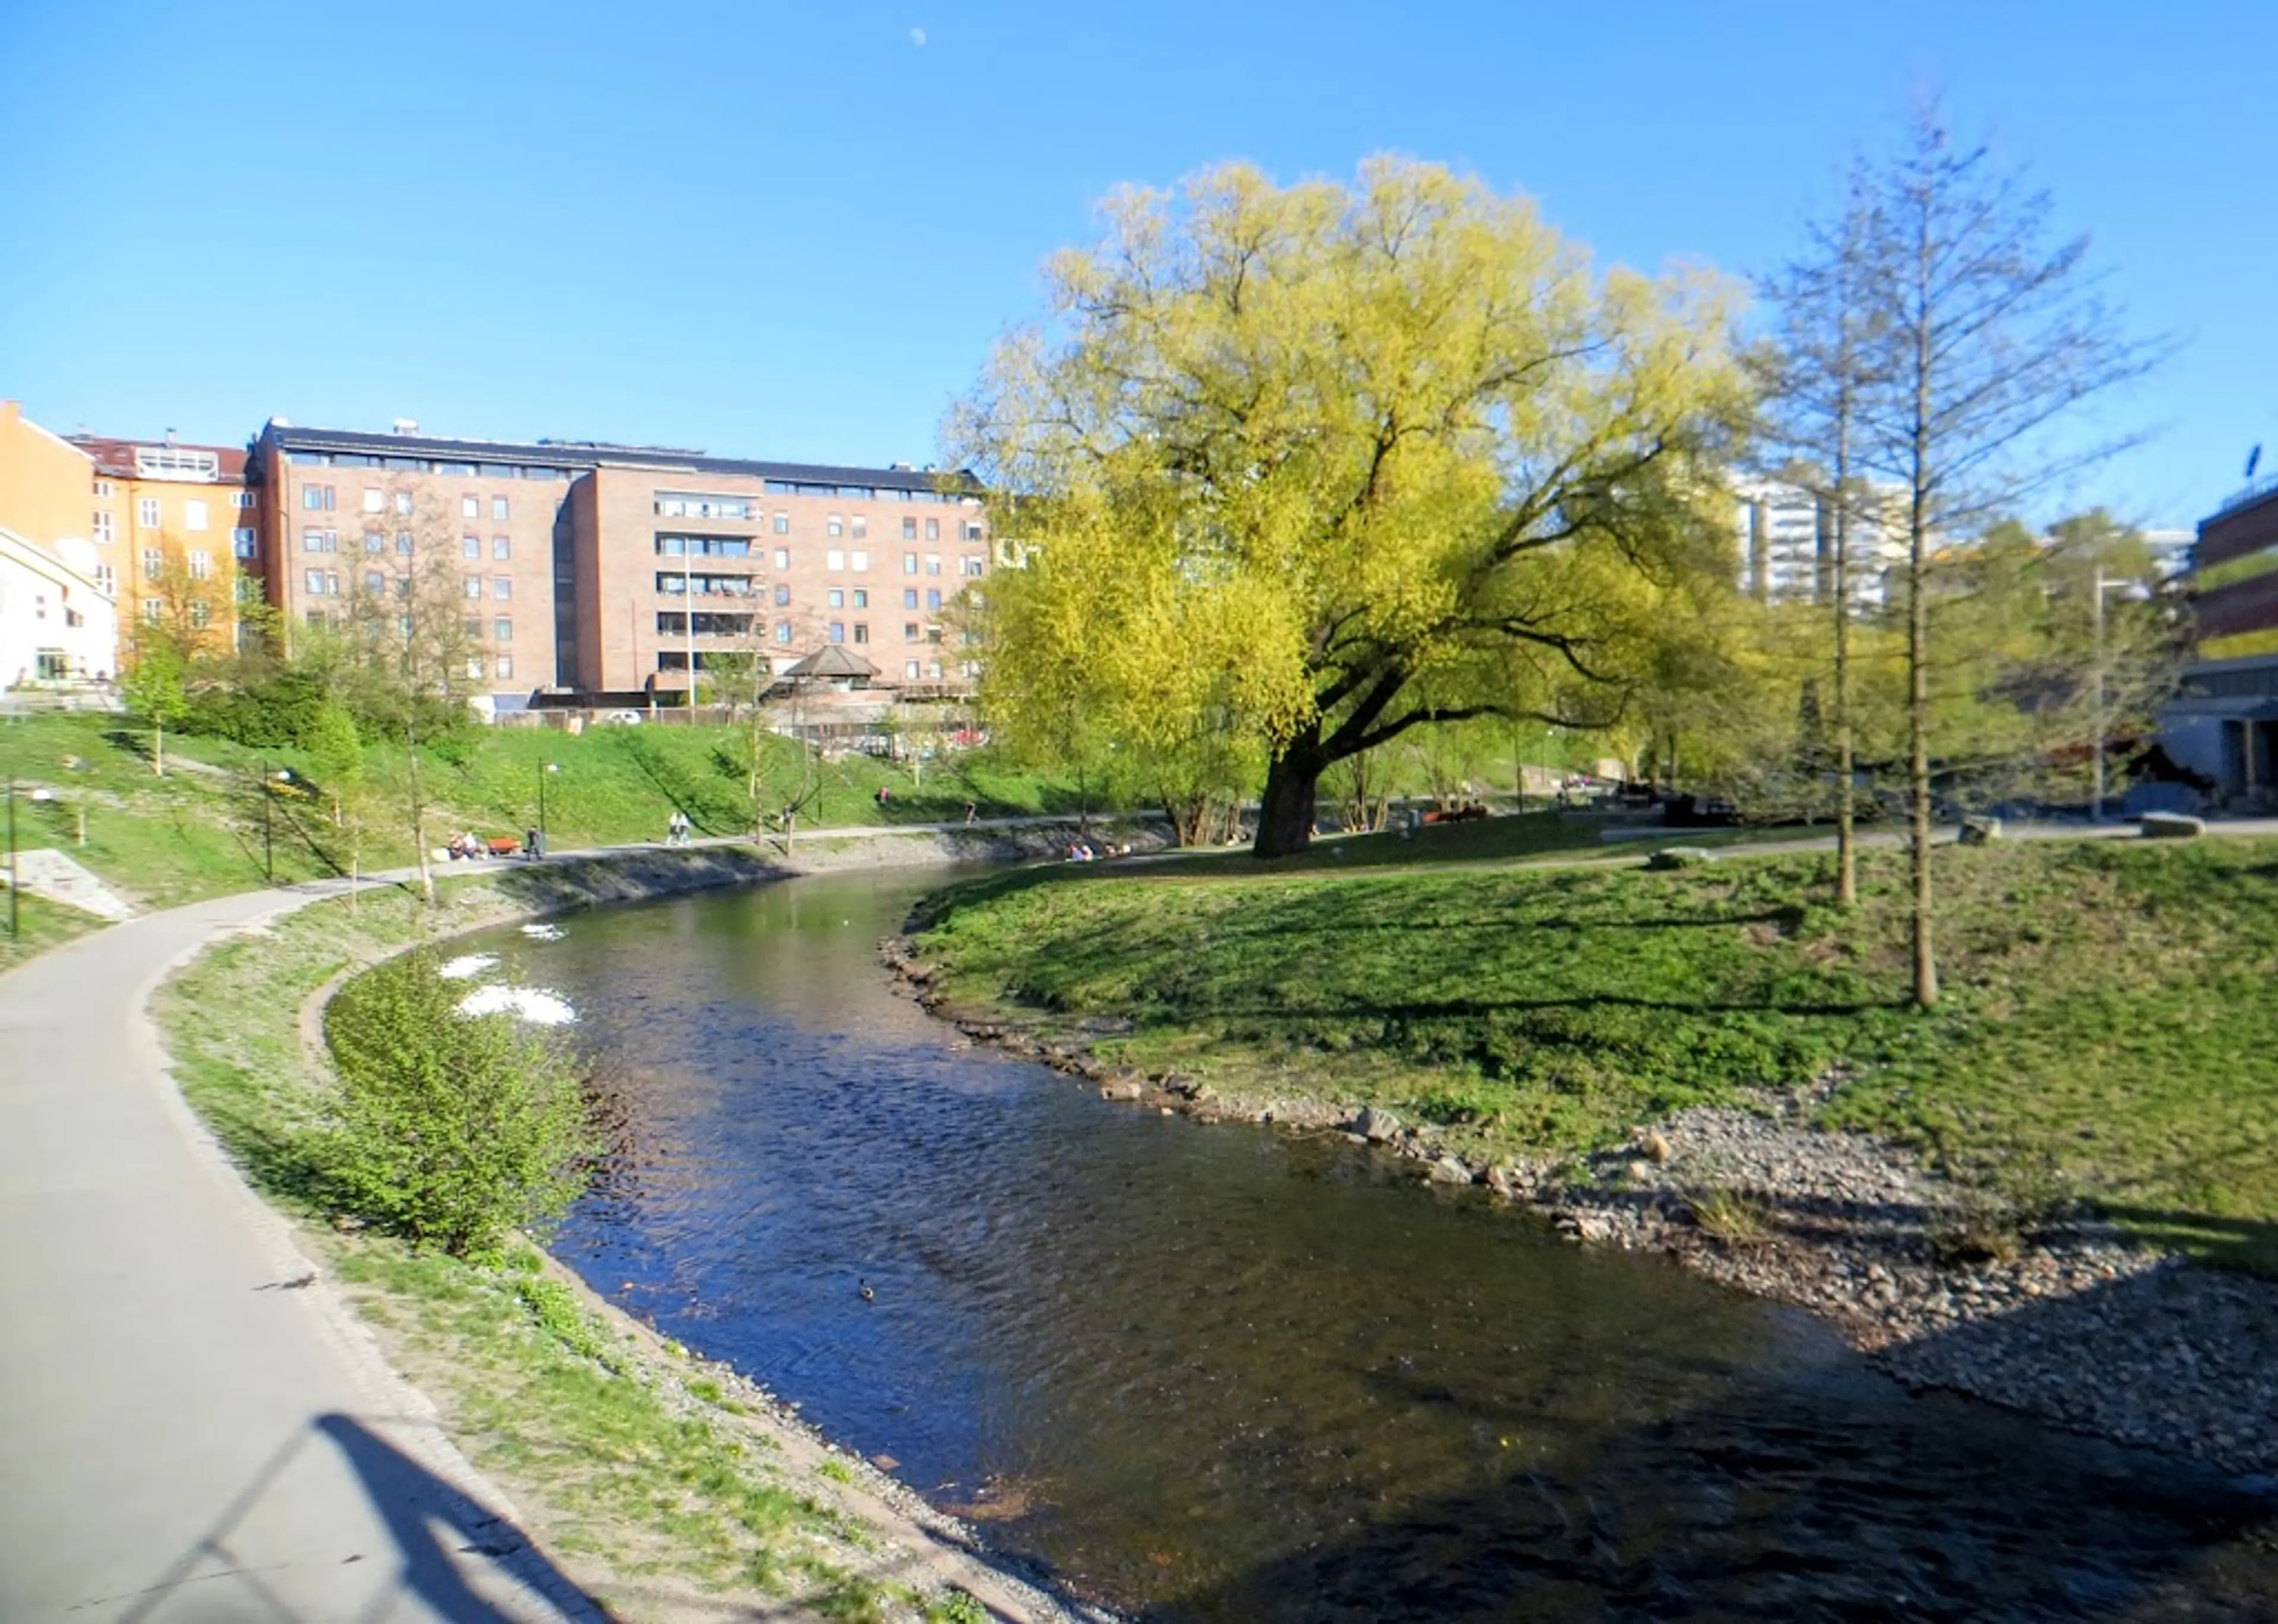 Akerselva River